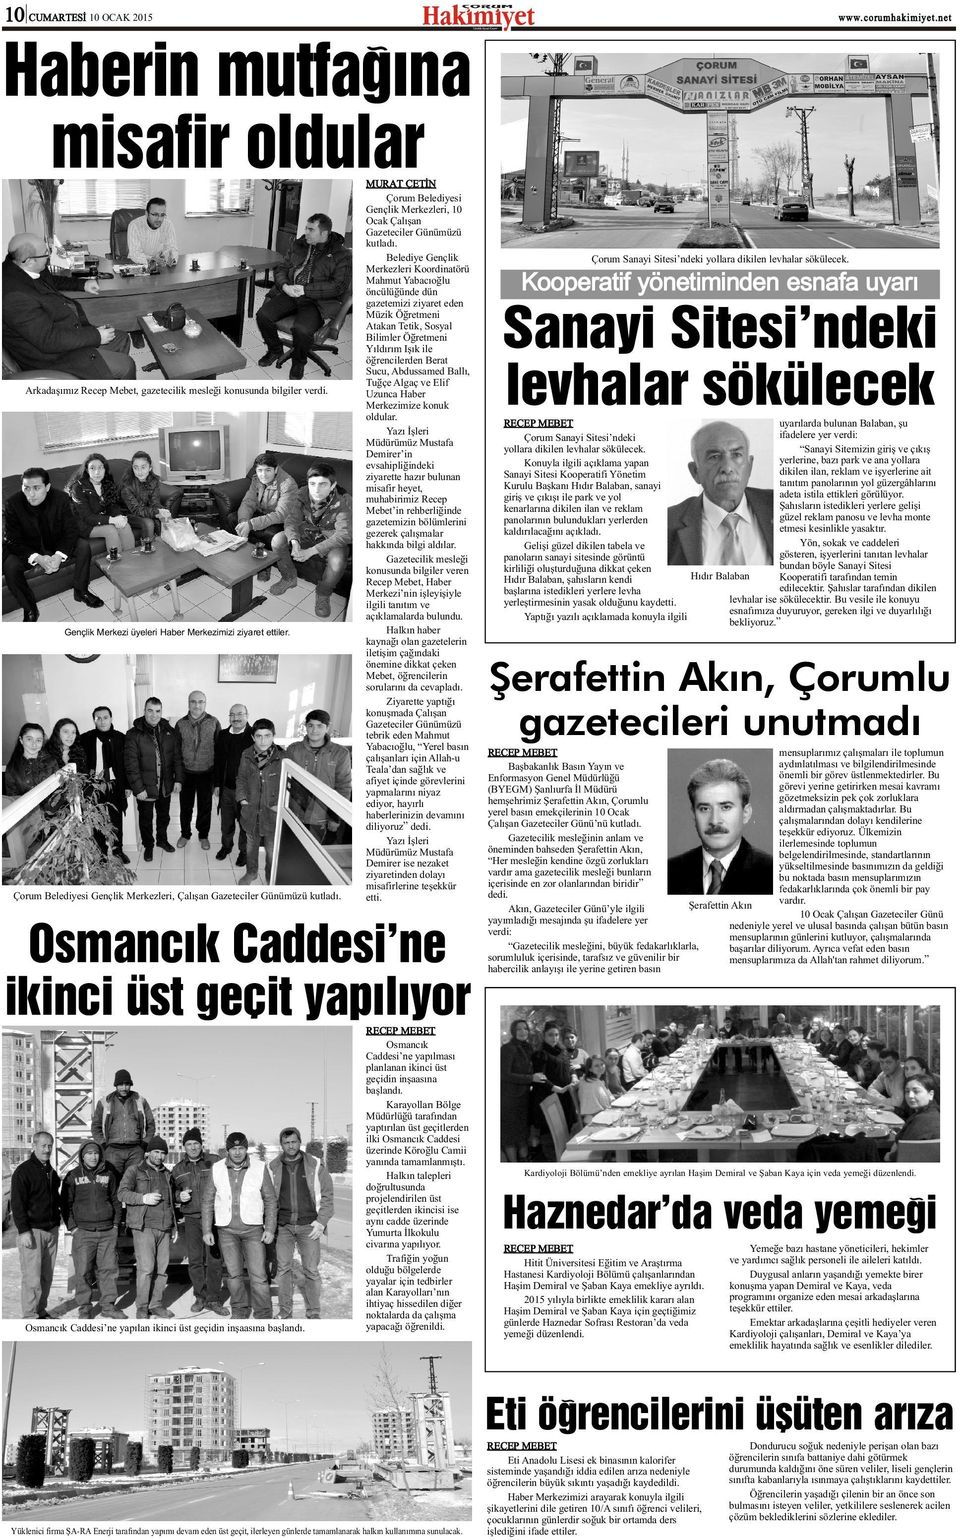 Çorum Belediyesi Gençlik Merkezleri, 10 Ocak Çalýþan Gazeteciler Günümüzü kutladý.